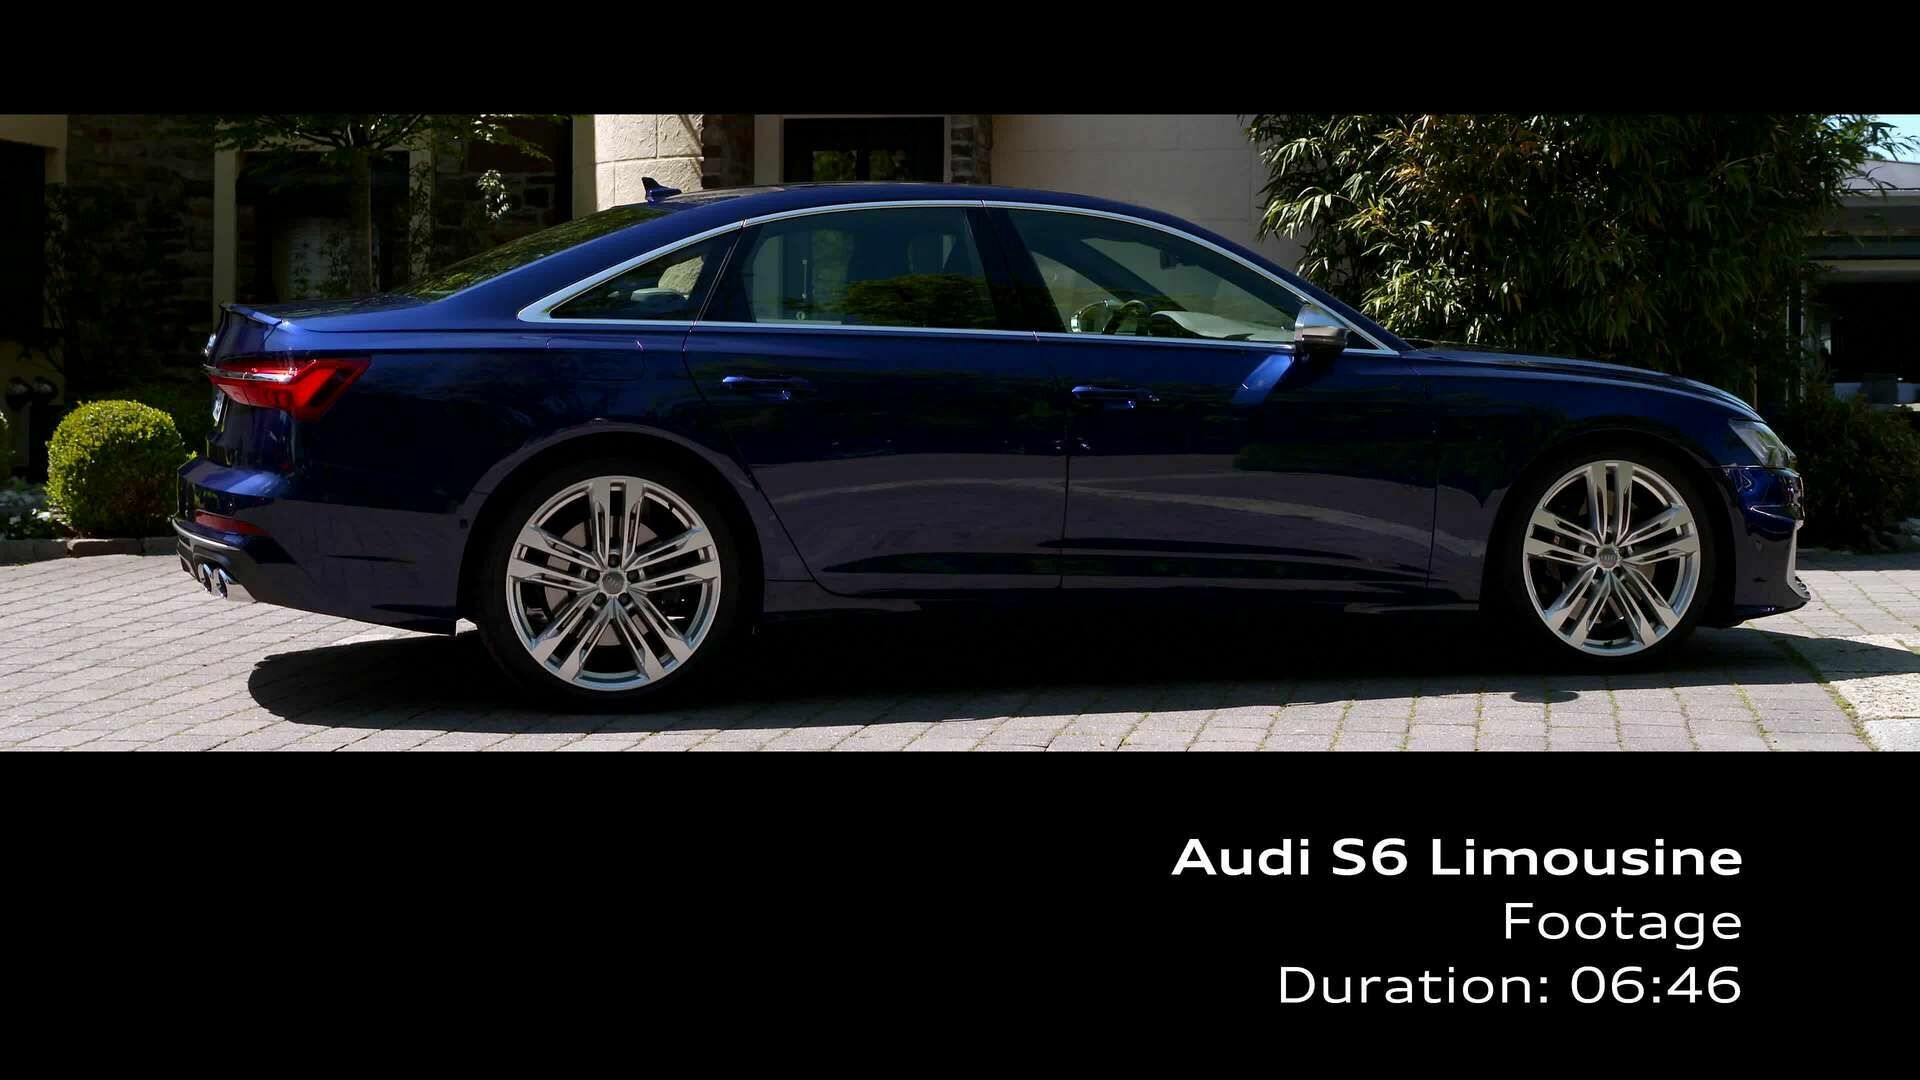 Audi S6 Sedan (Footage)